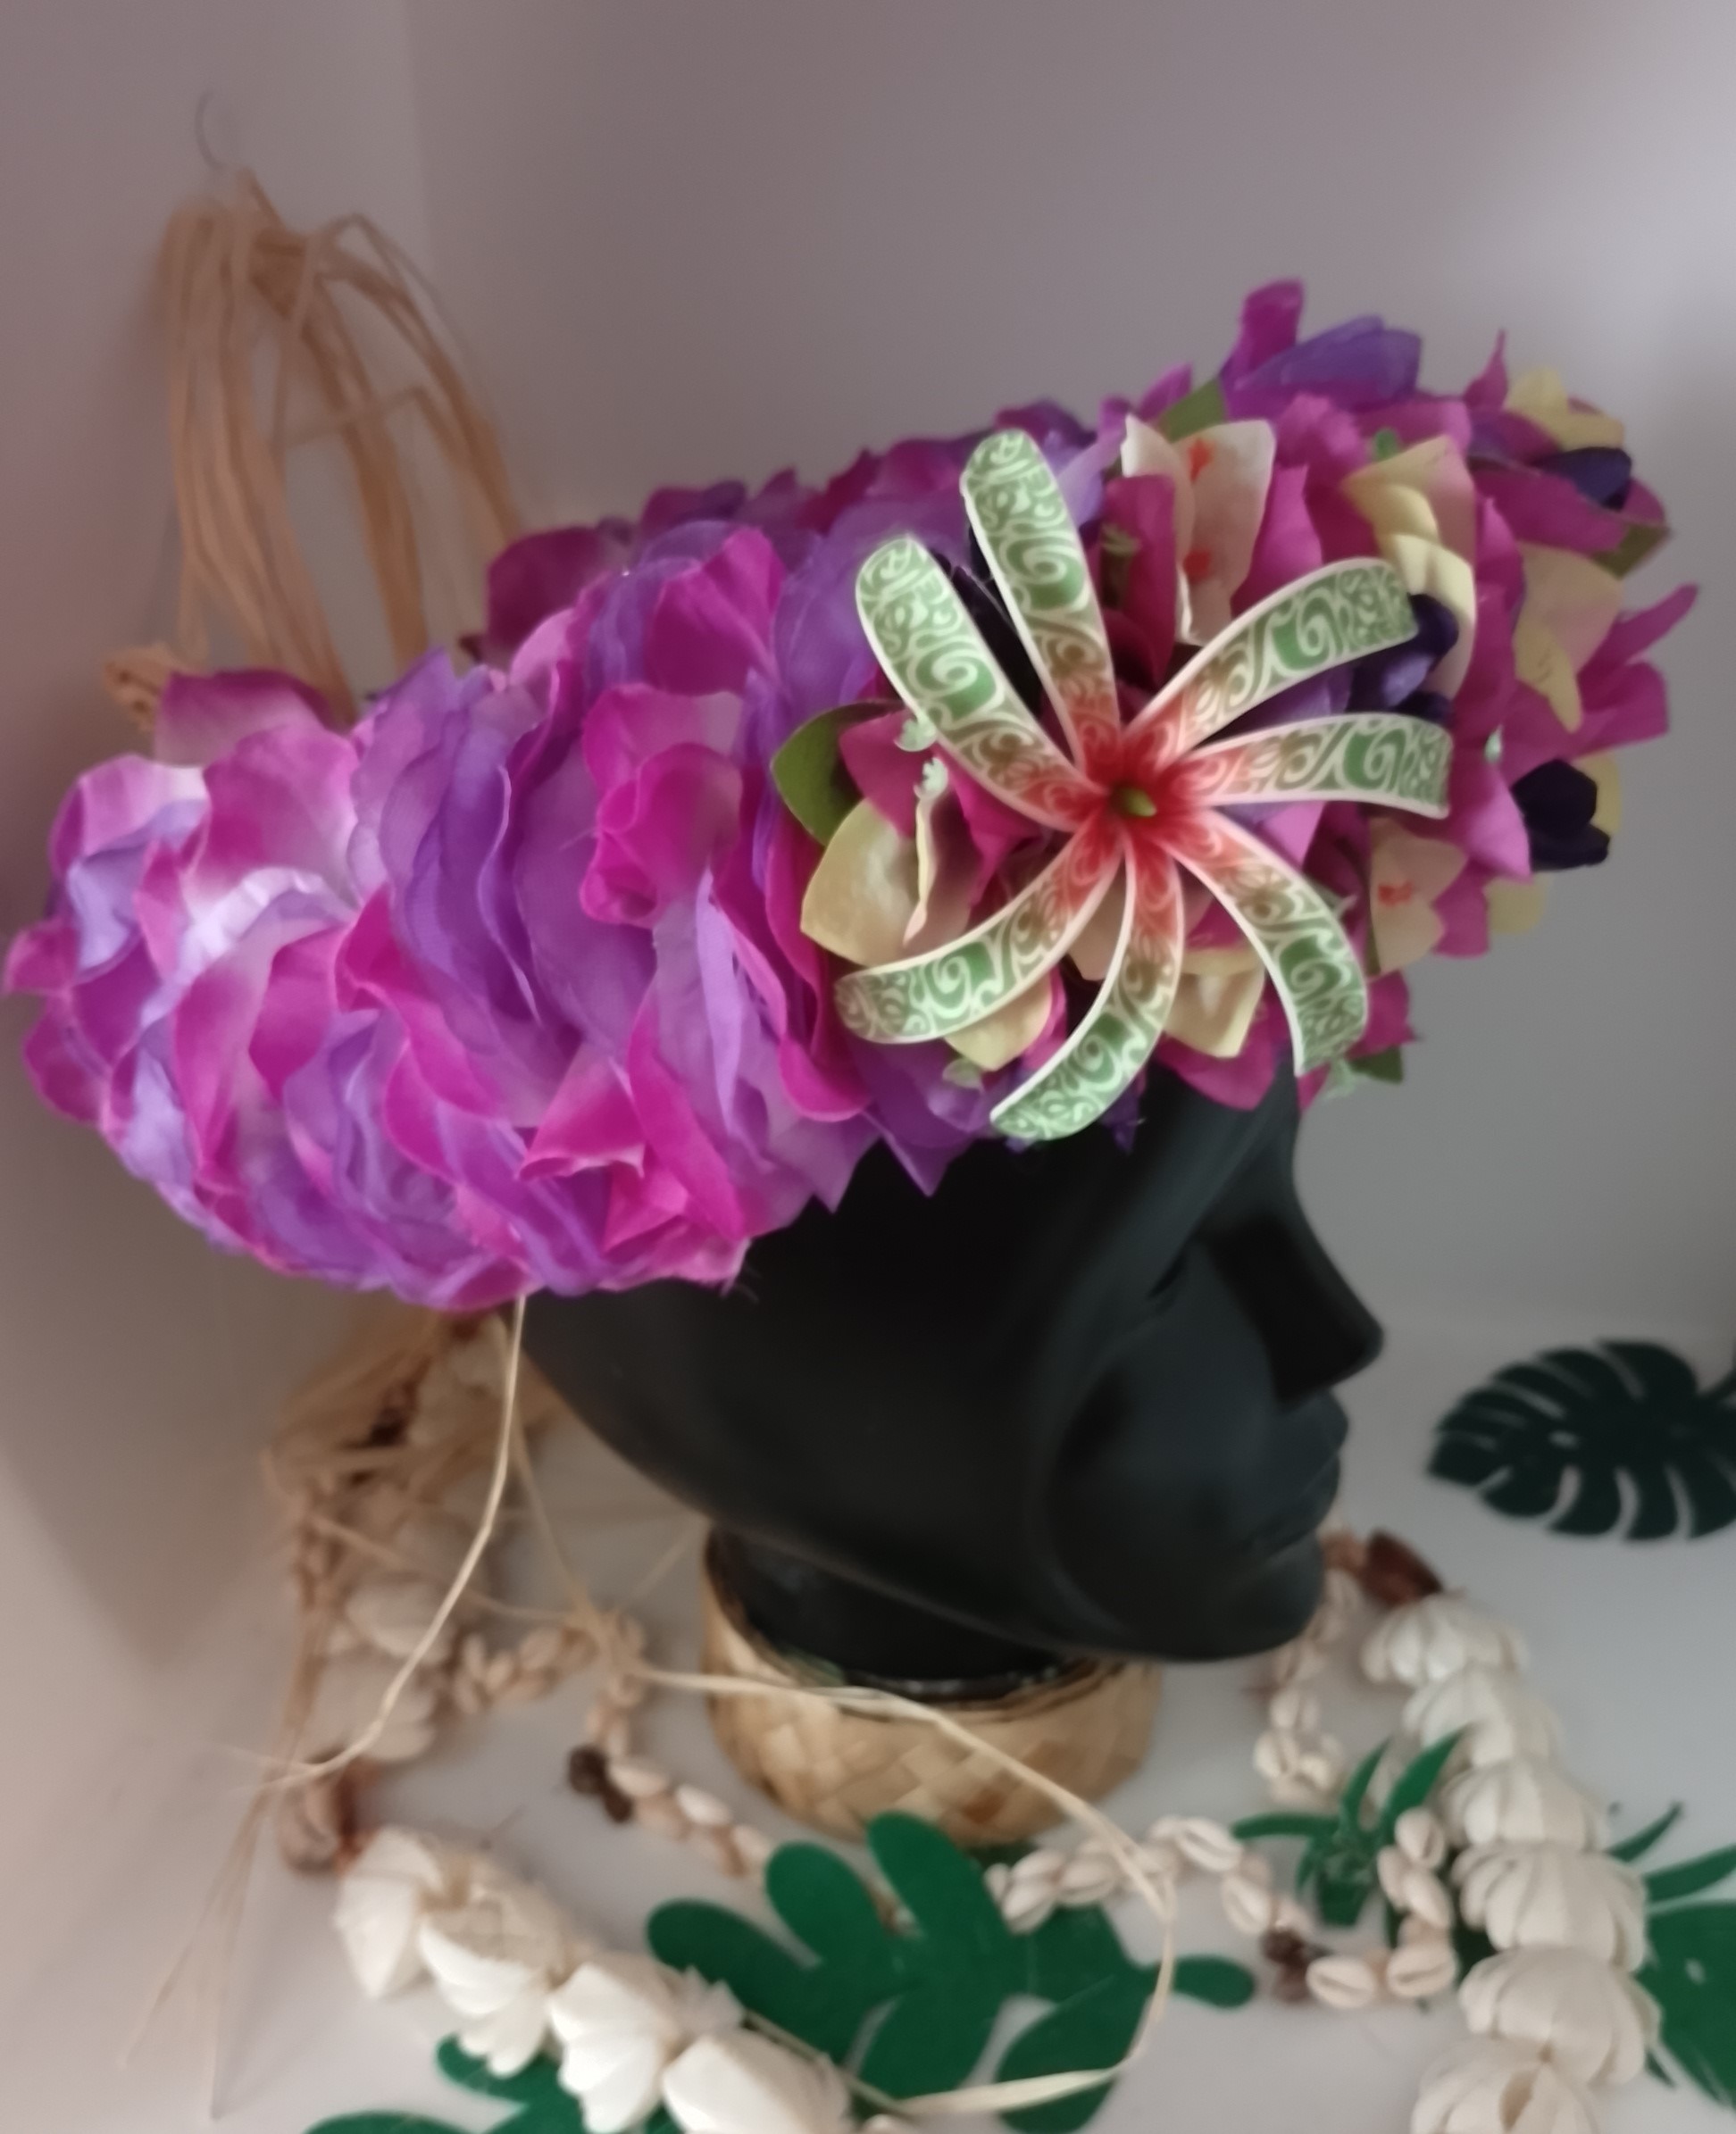 couronne florale de fleurs permanentes tahiti violette bougainvilliers vert anis bord mauves tiare tatouée by Vaite.e.Tiare créations